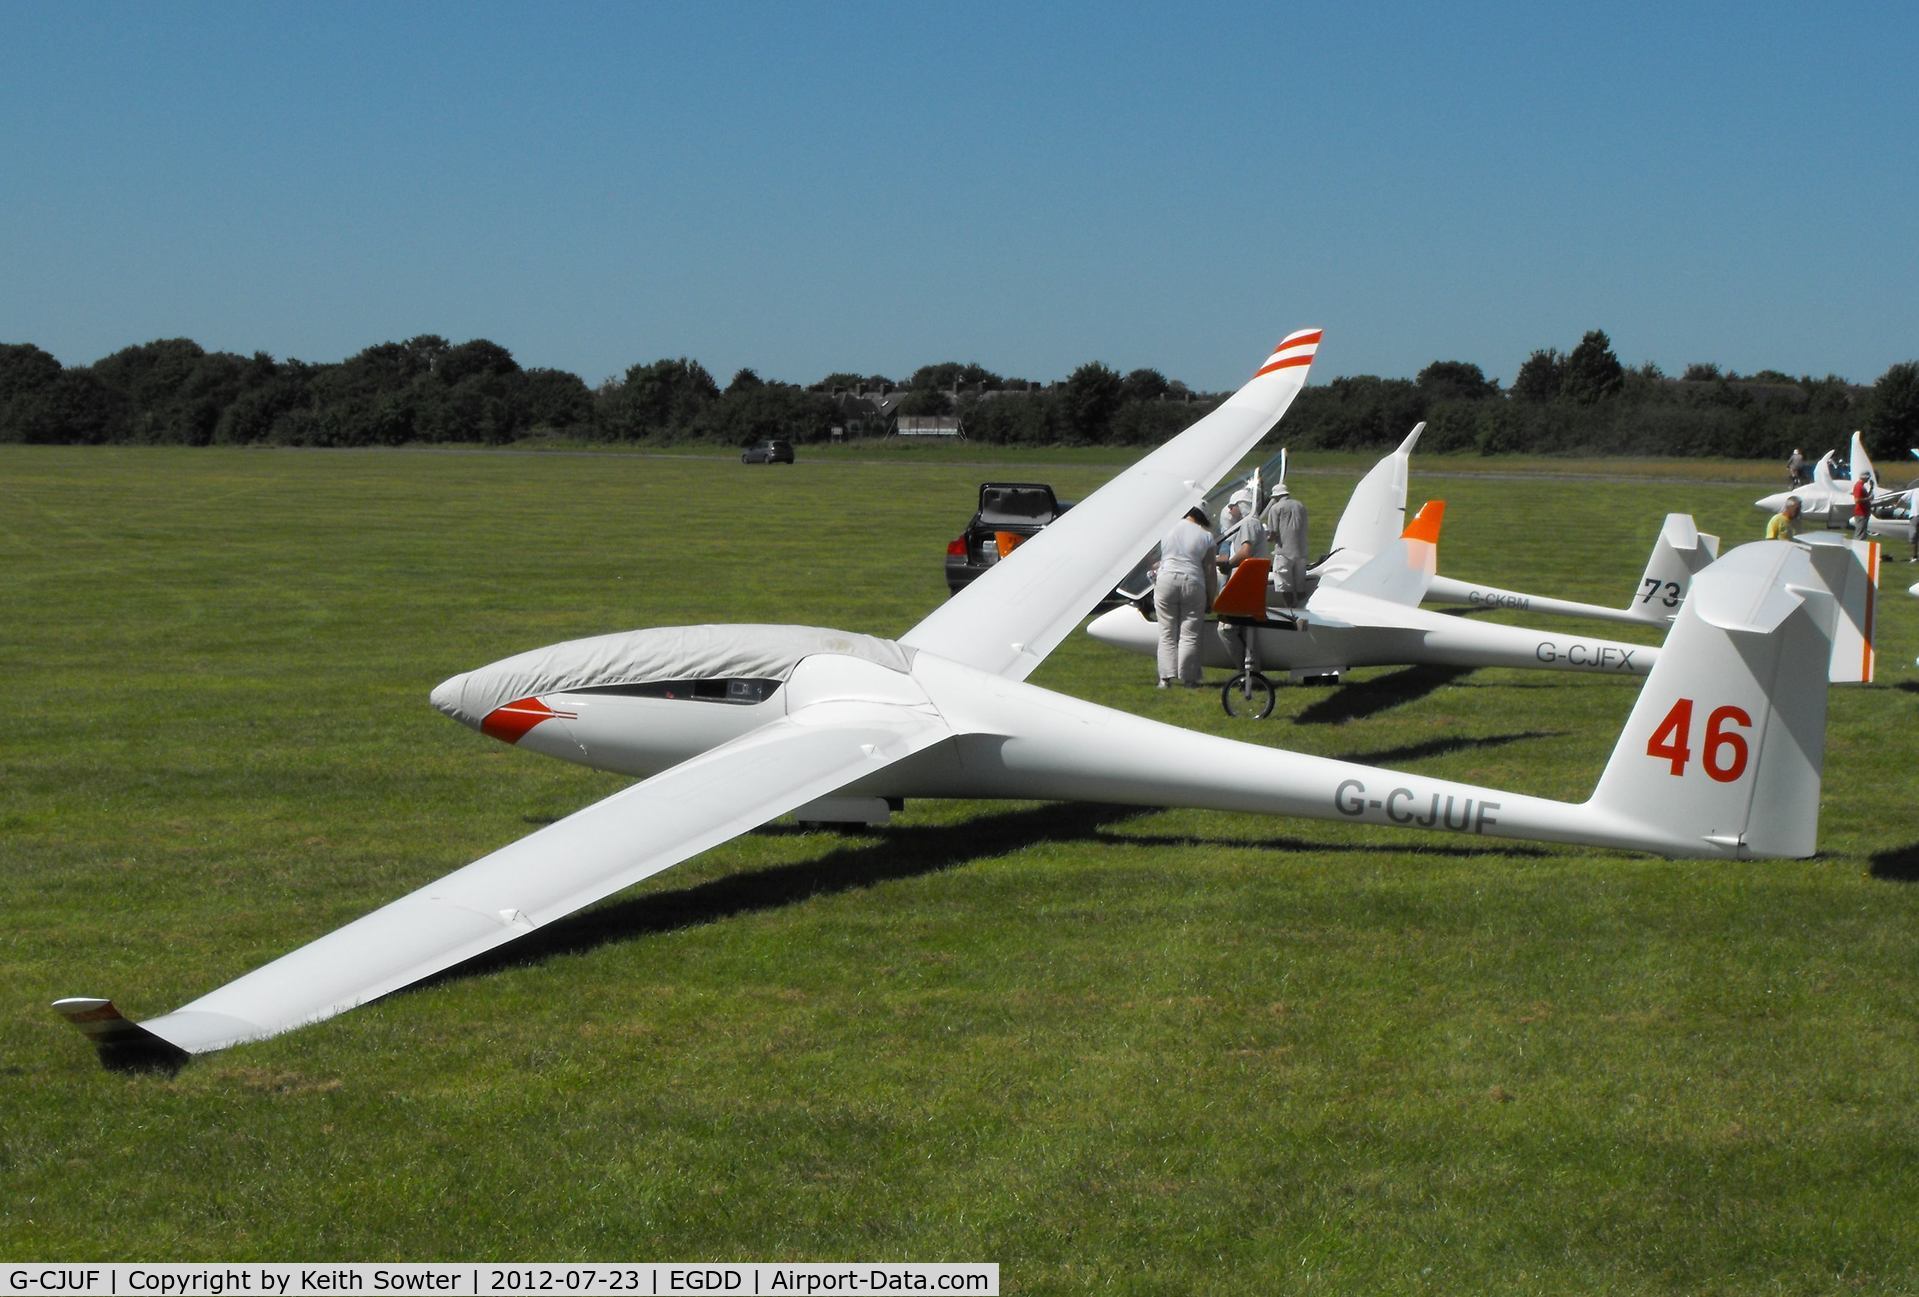 G-CJUF, 2000 Schempp-Hirth Ventus 2cT C/N 53, Gliding competitor